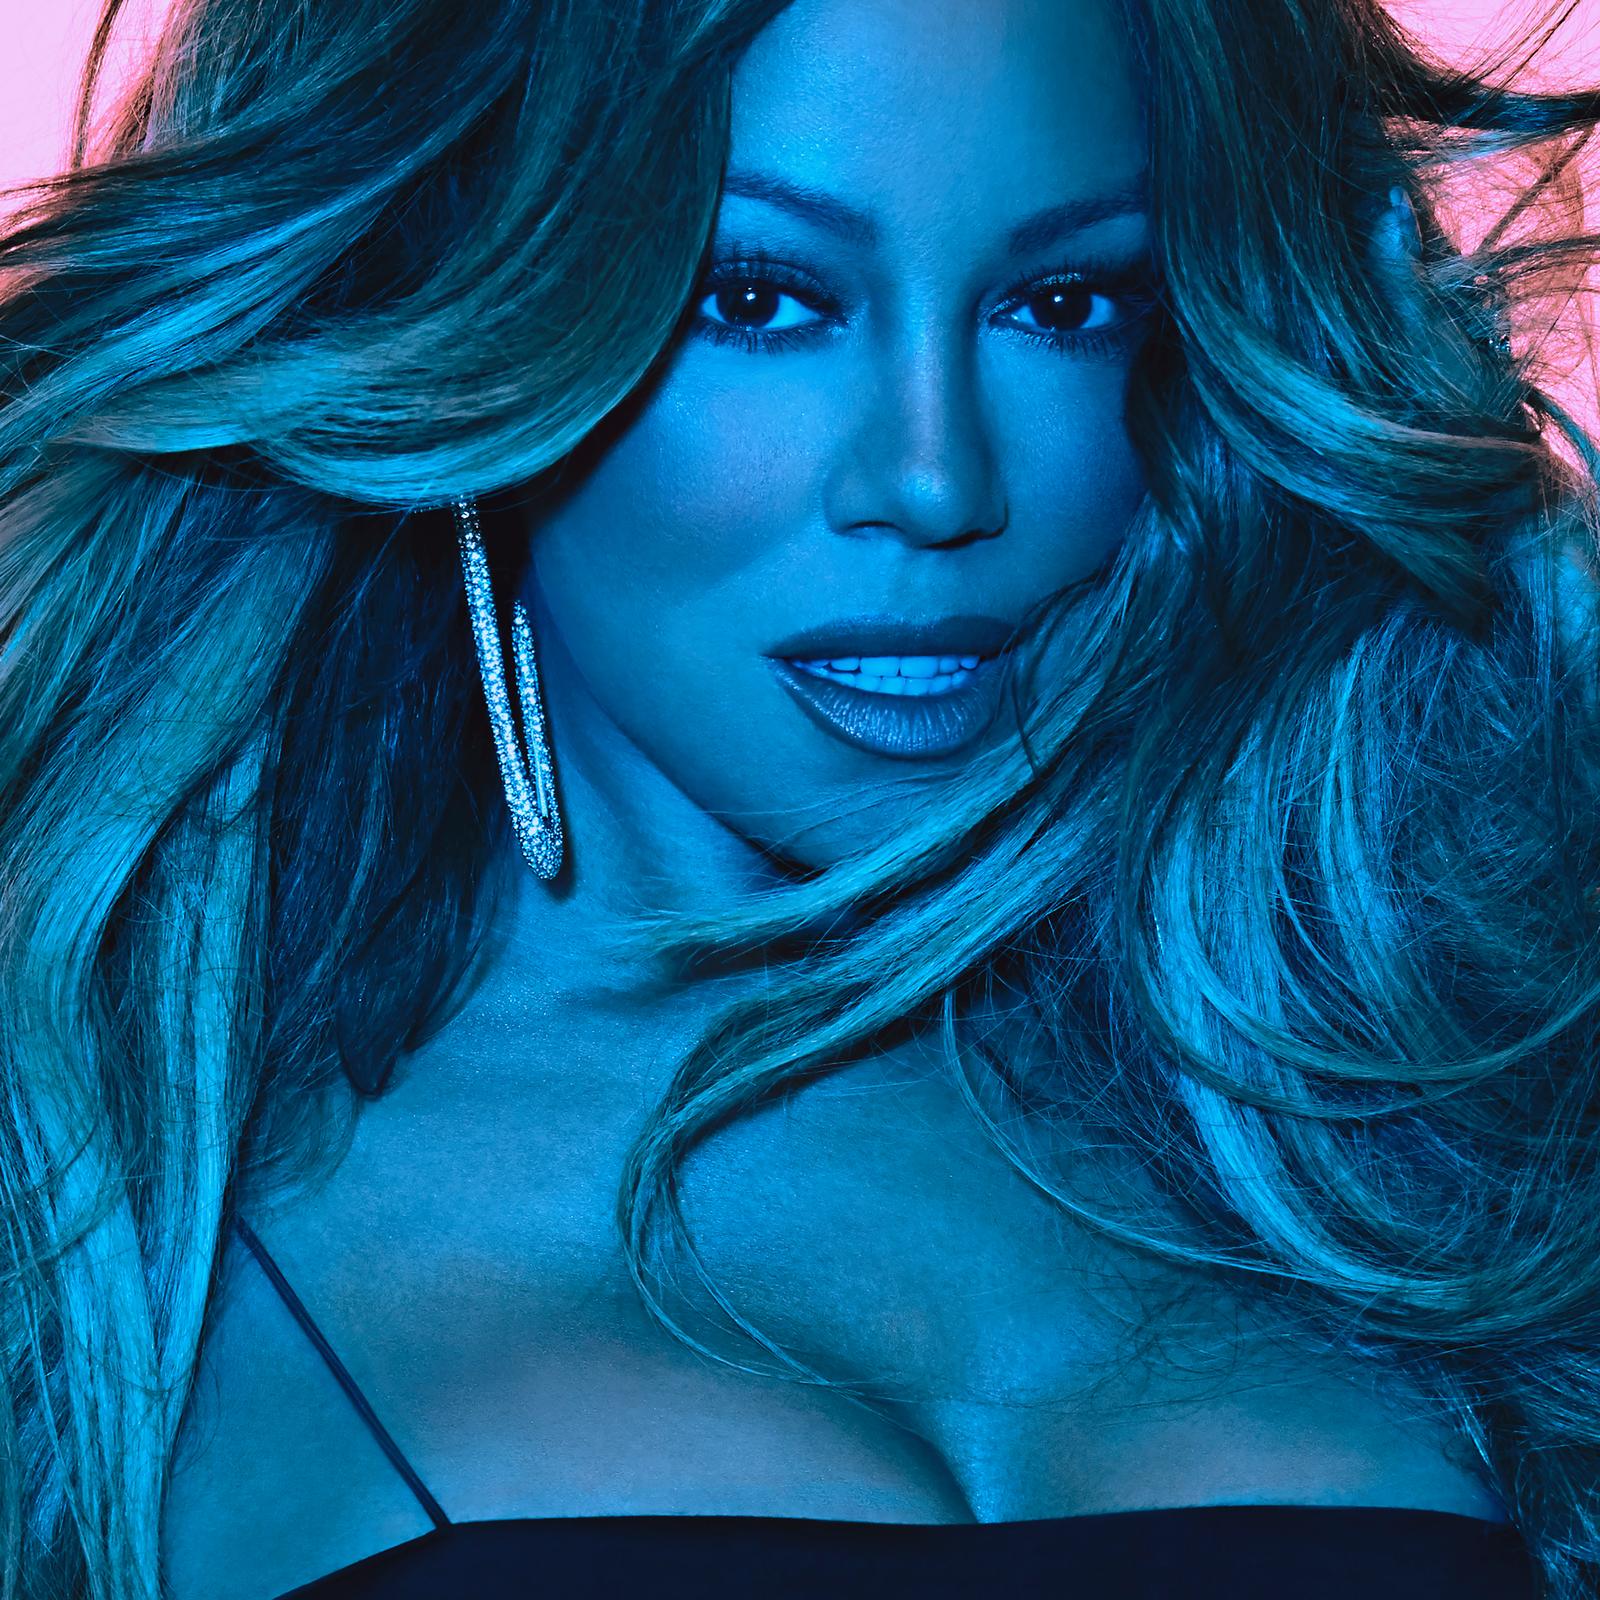 Mariah Carey wydaje nową płytę - Caution od dzisiaj w sprzedaży!